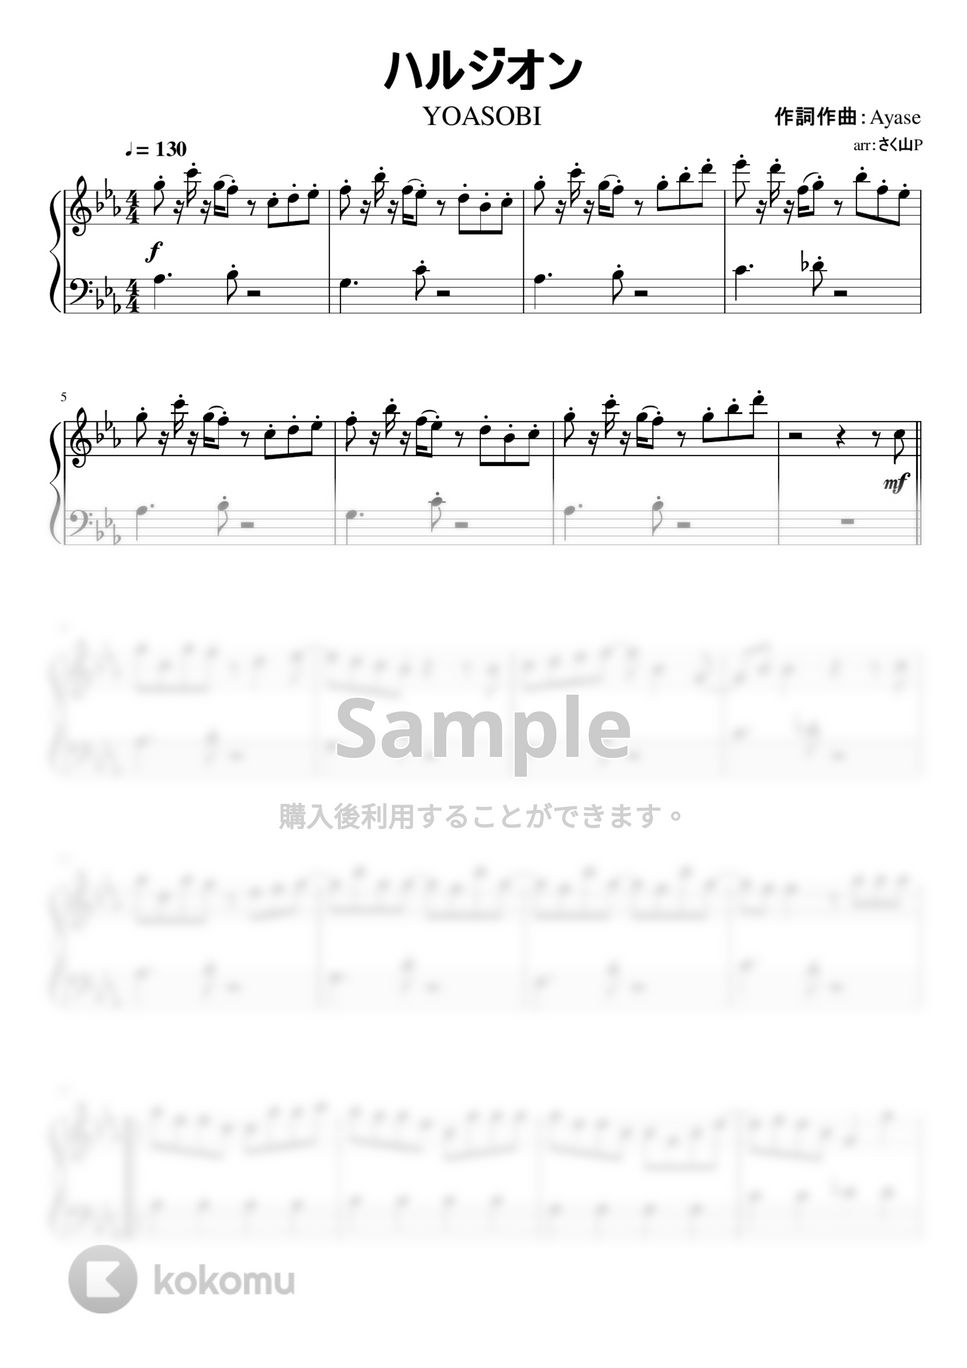 YOASOBI - ハルジオン (簡単ピアノ / ショートバージョン / 転調無し) by さく山P